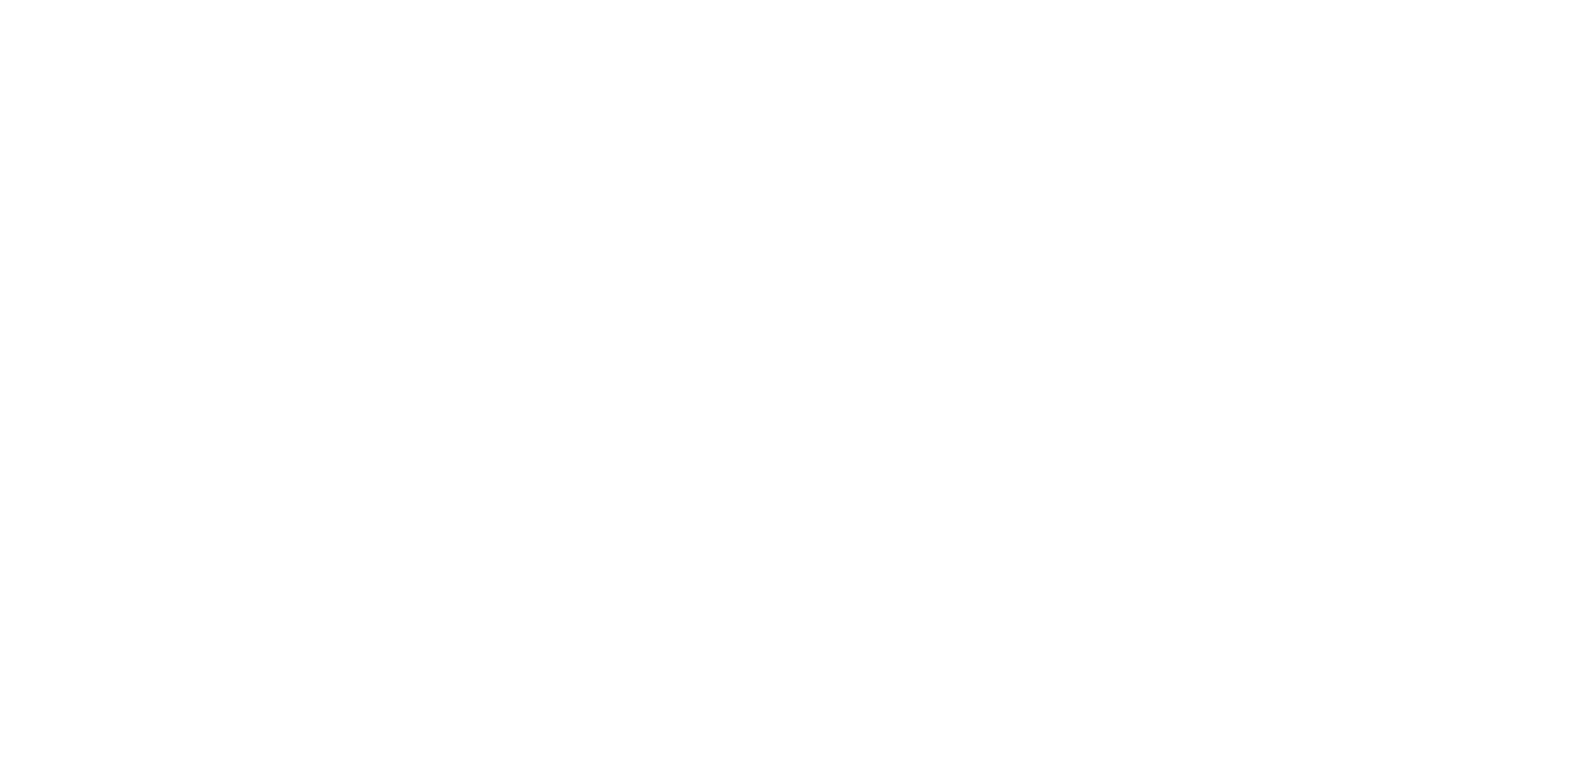 Fortress REIT Logo groß für dunkle Hintergründe (transparentes PNG)